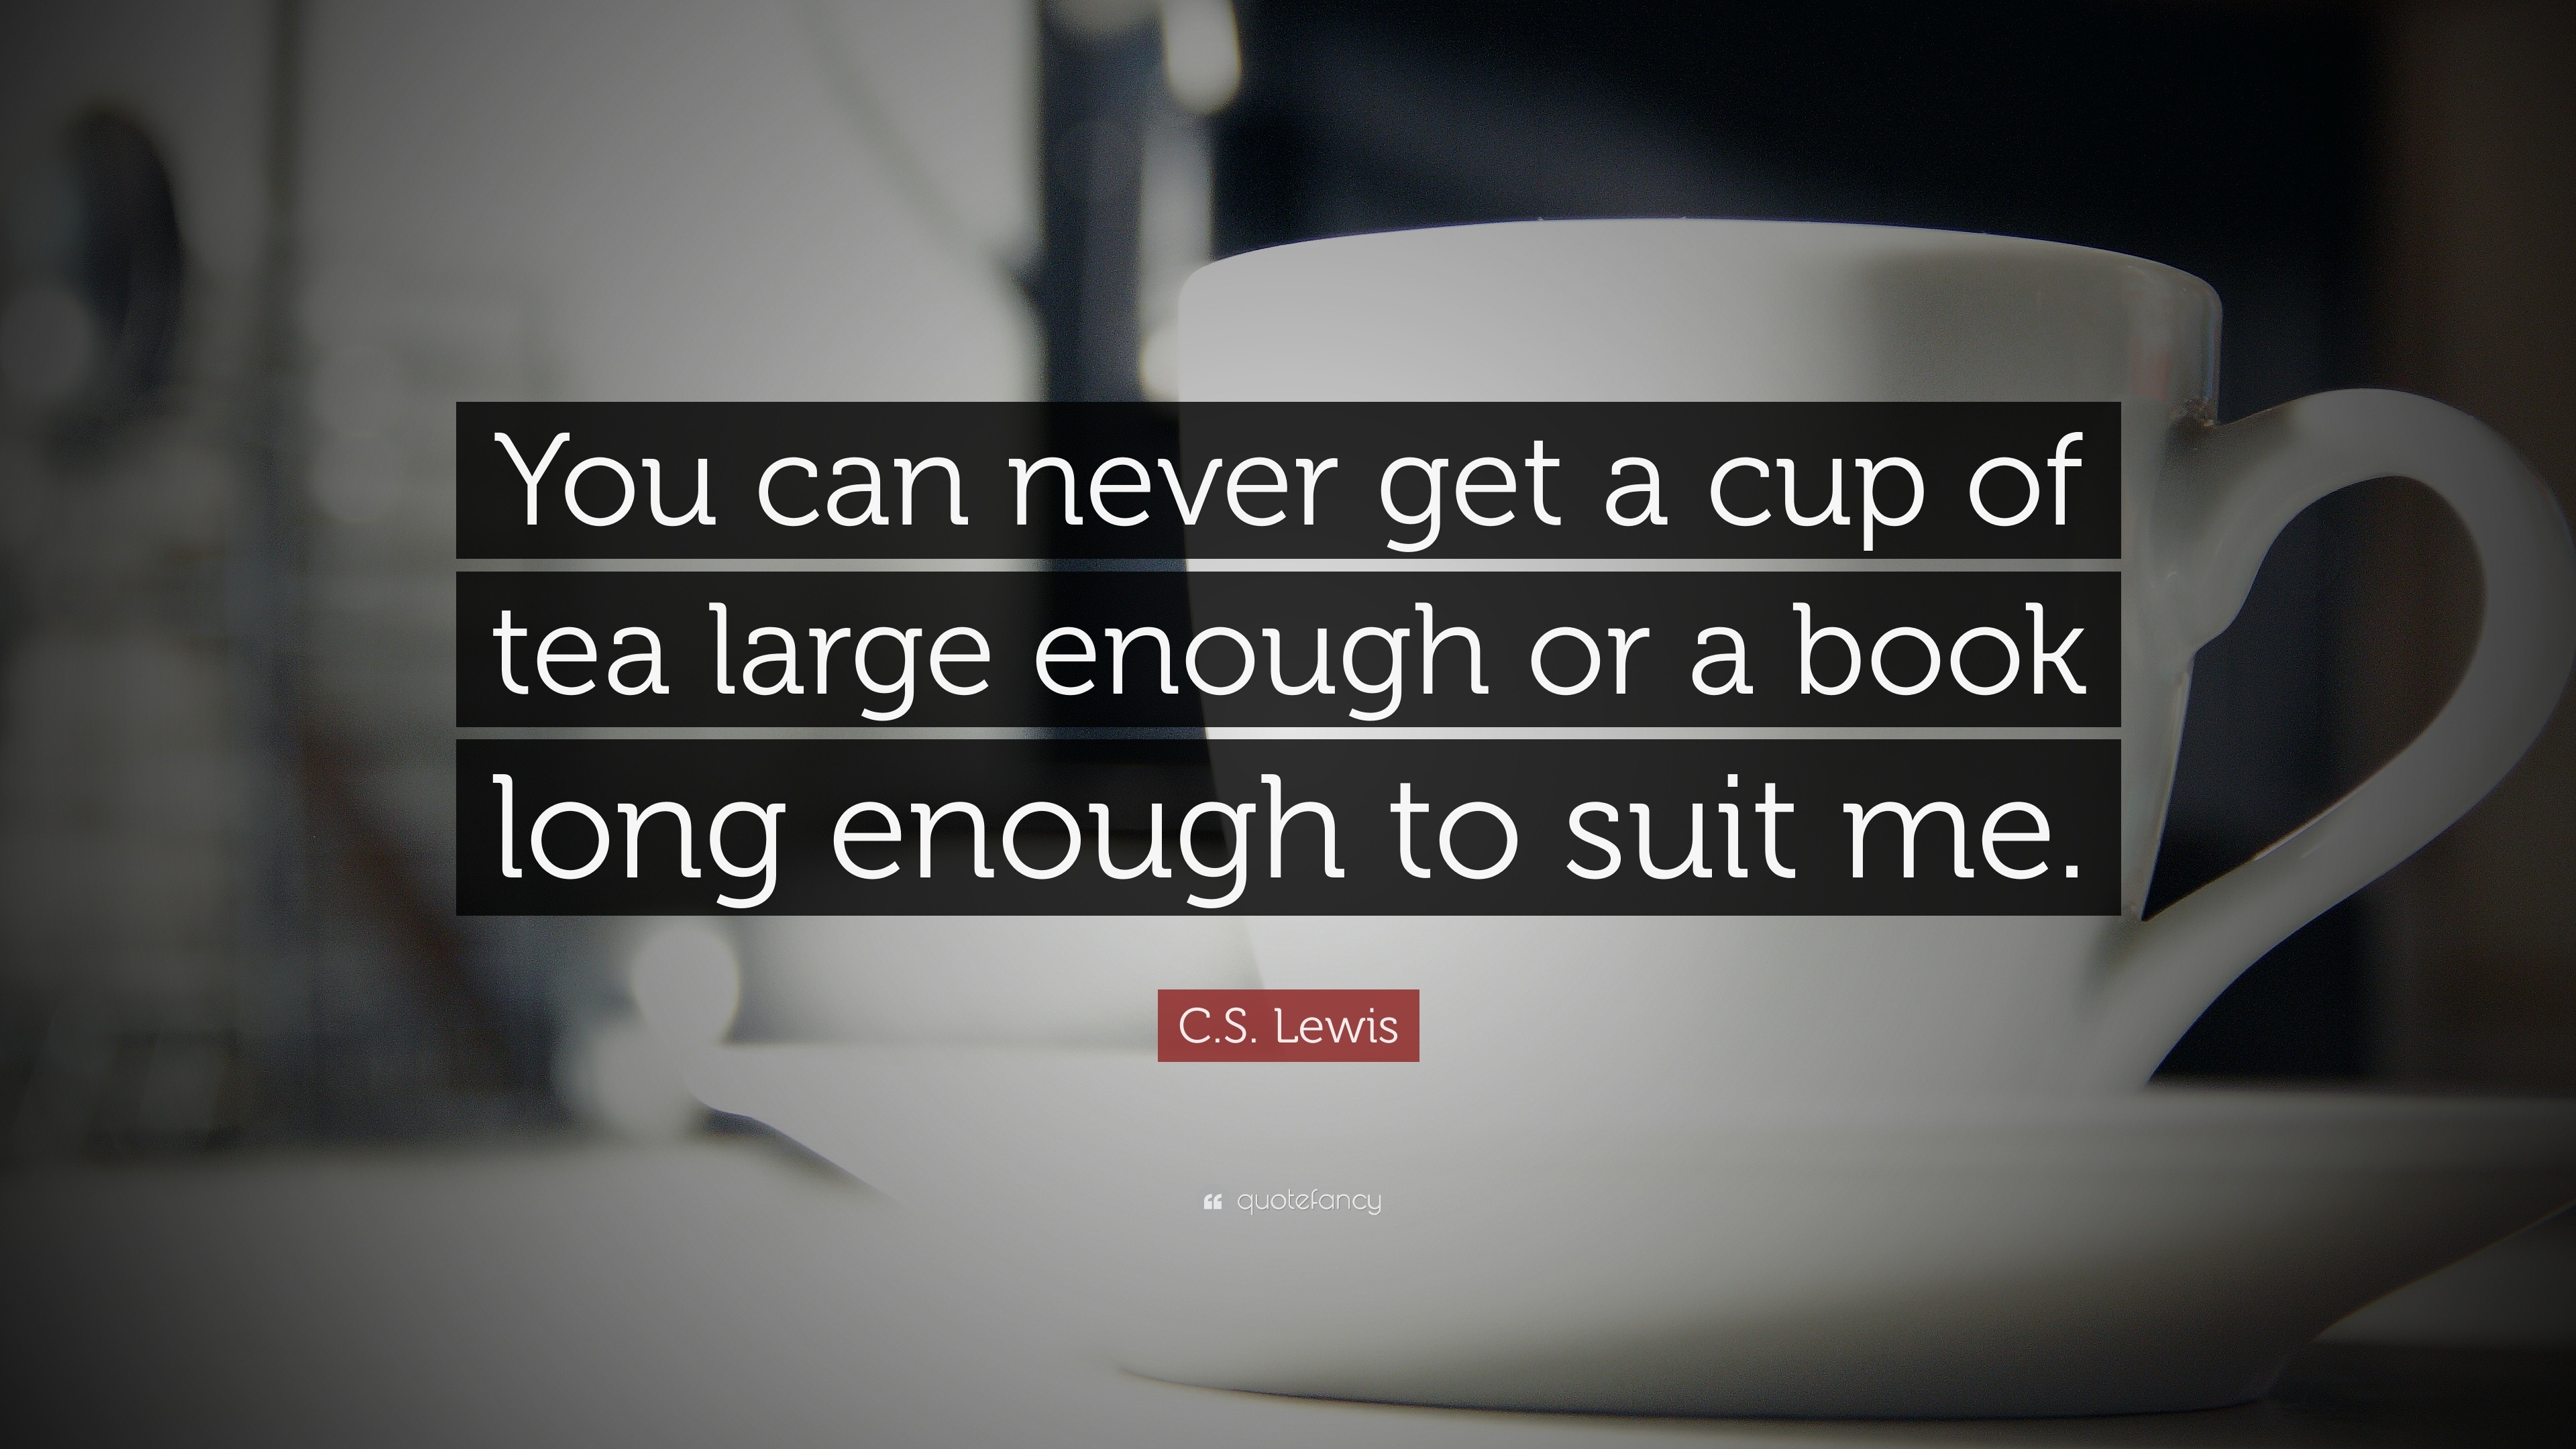 Big Cup of Tea